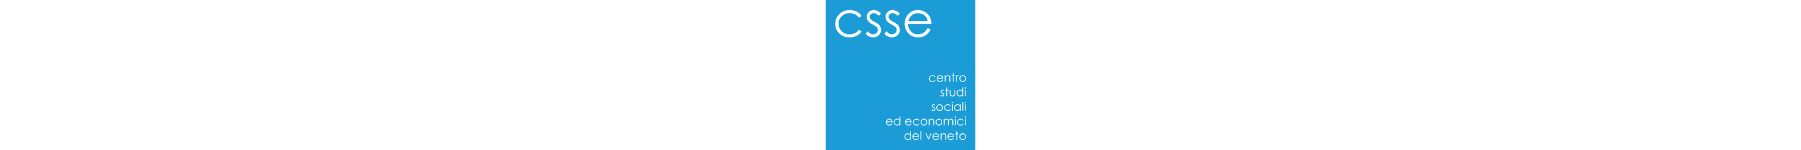 CSSE-Centro Studi Sociali ed Economici del Veneto